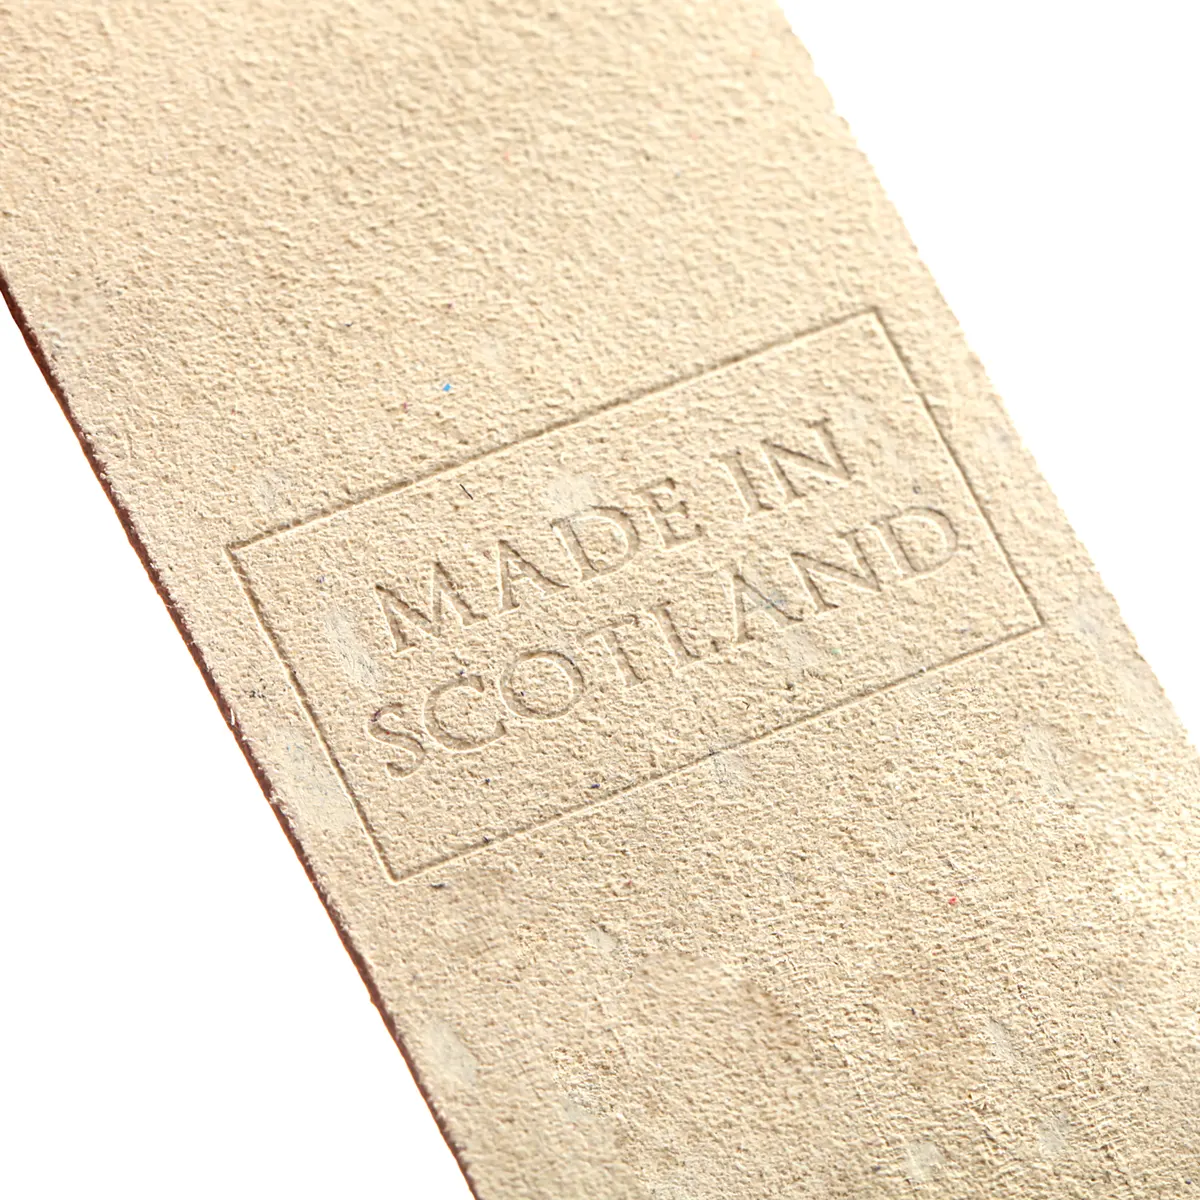 Aberdeen - Lesezeichen aus Leder in Creme -  Made in Scotland